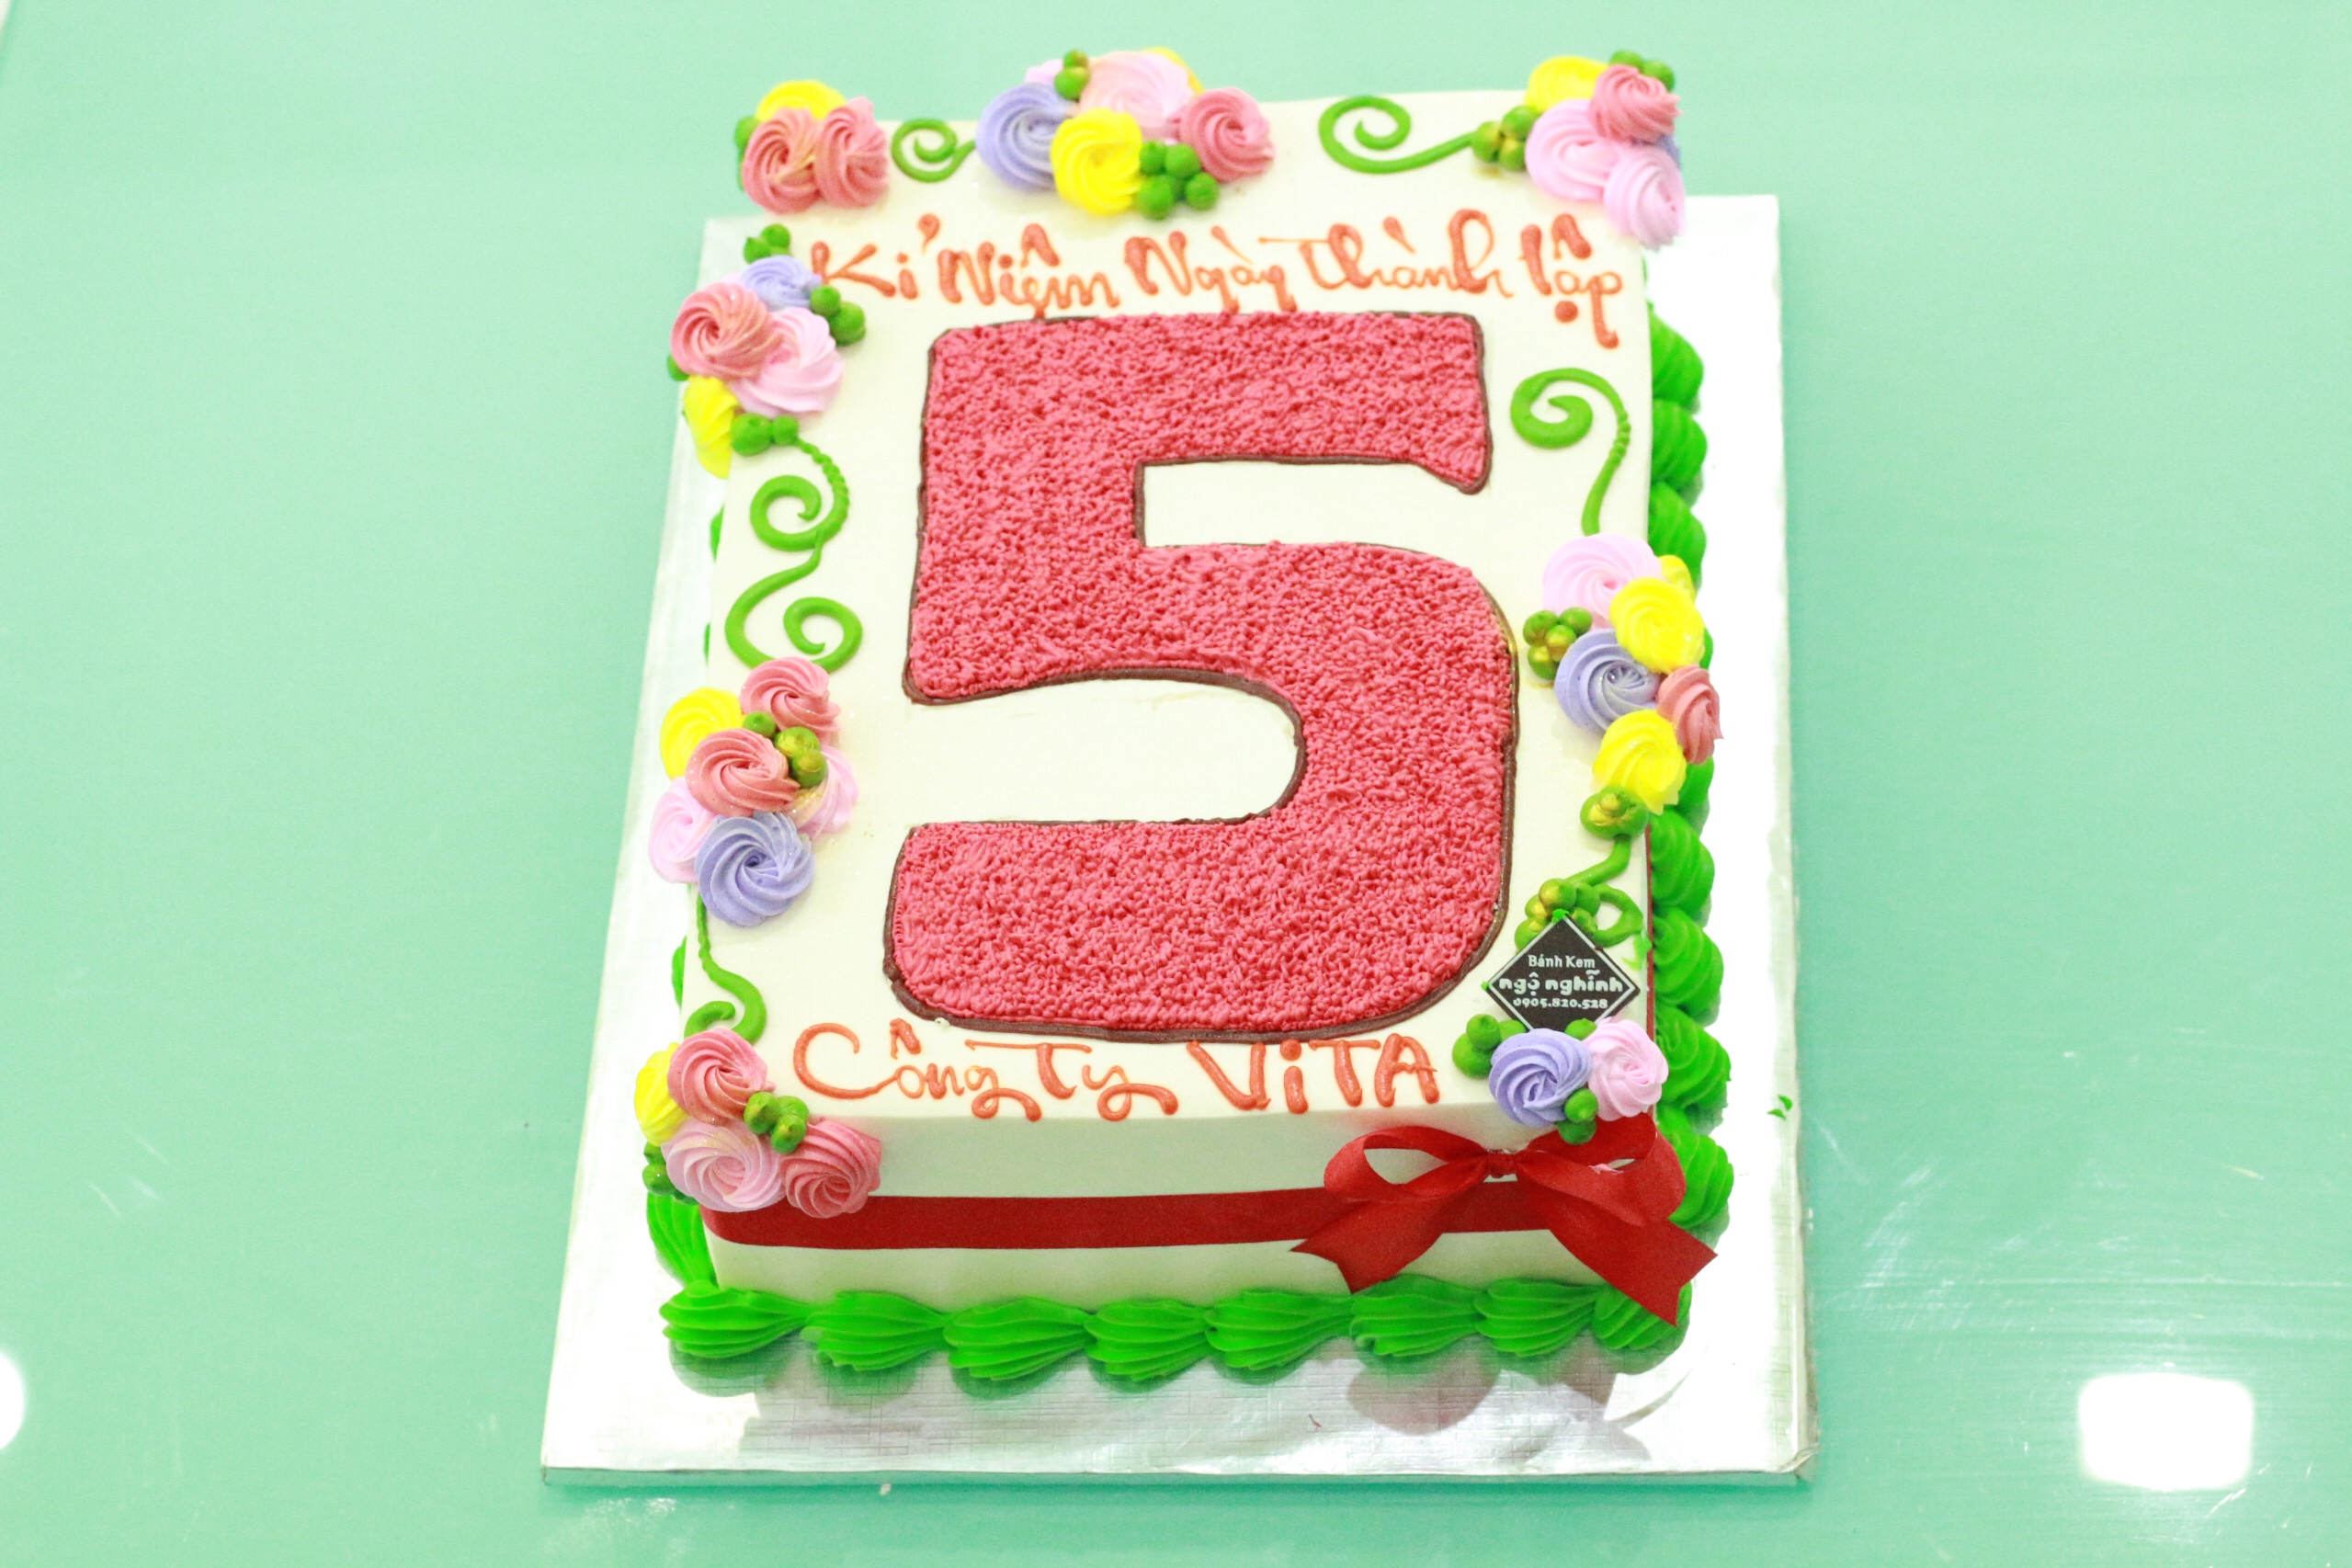 Bánh kem sinh nhật: Hãy nhìn vào bức hình ngọt ngào này với những chiếc bánh kem sinh nhật thơm ngon và đầy màu sắc! Chắc chắn bạn sẽ muốn đến ngay một tiệm bánh để thưởng thức hoặc tự tay thực hiện cho người yêu thương của mình một chiếc sinh nhật đáng nhớ.